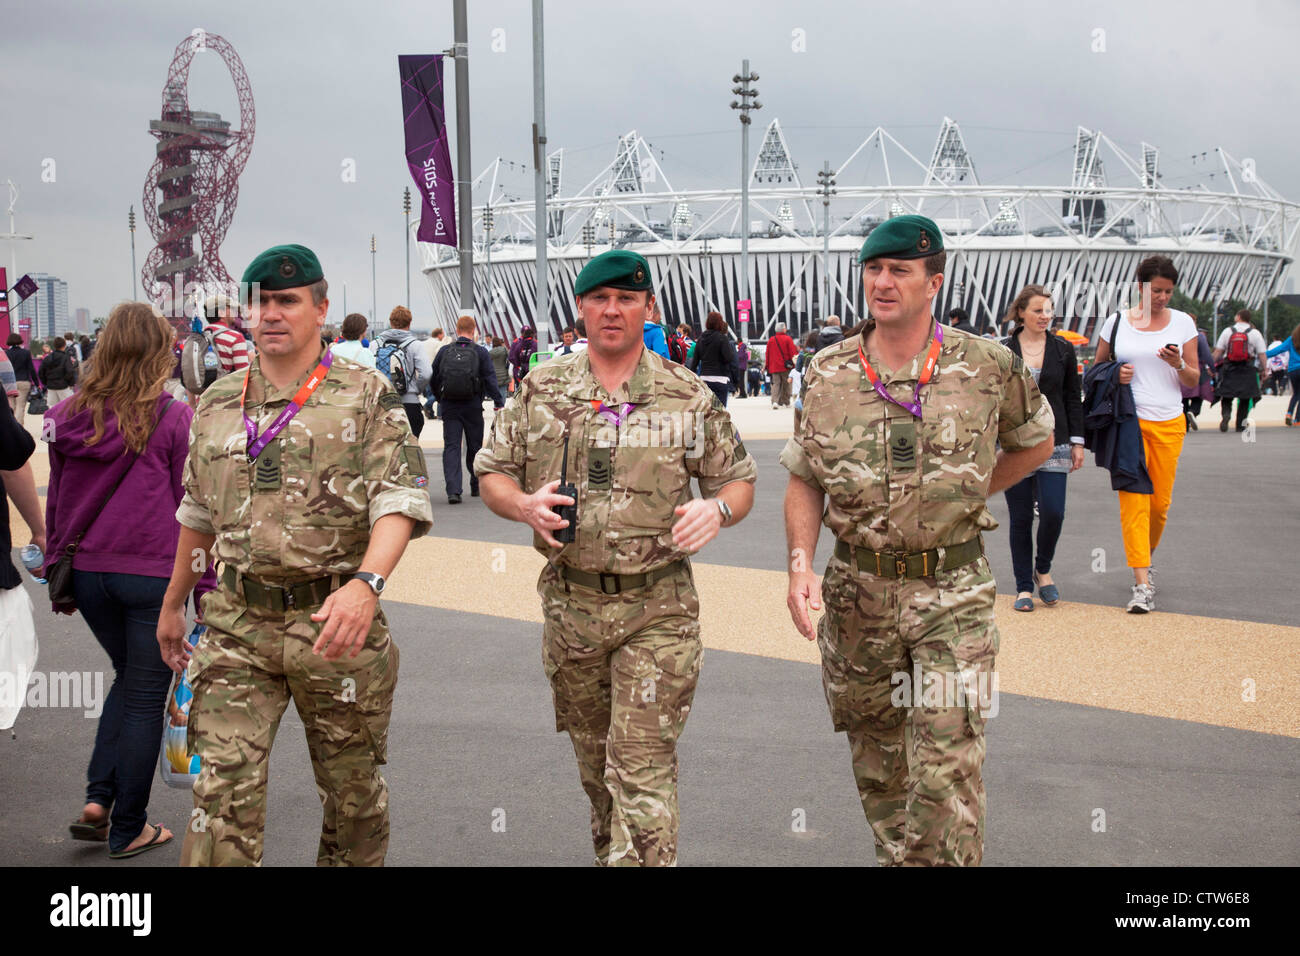 Londra 2012 Parco Olimpico di Stratford. Esercito britannico in servizio dopo che essi sono stati portati a prelevare le carenze in materia di sicurezza. Foto Stock